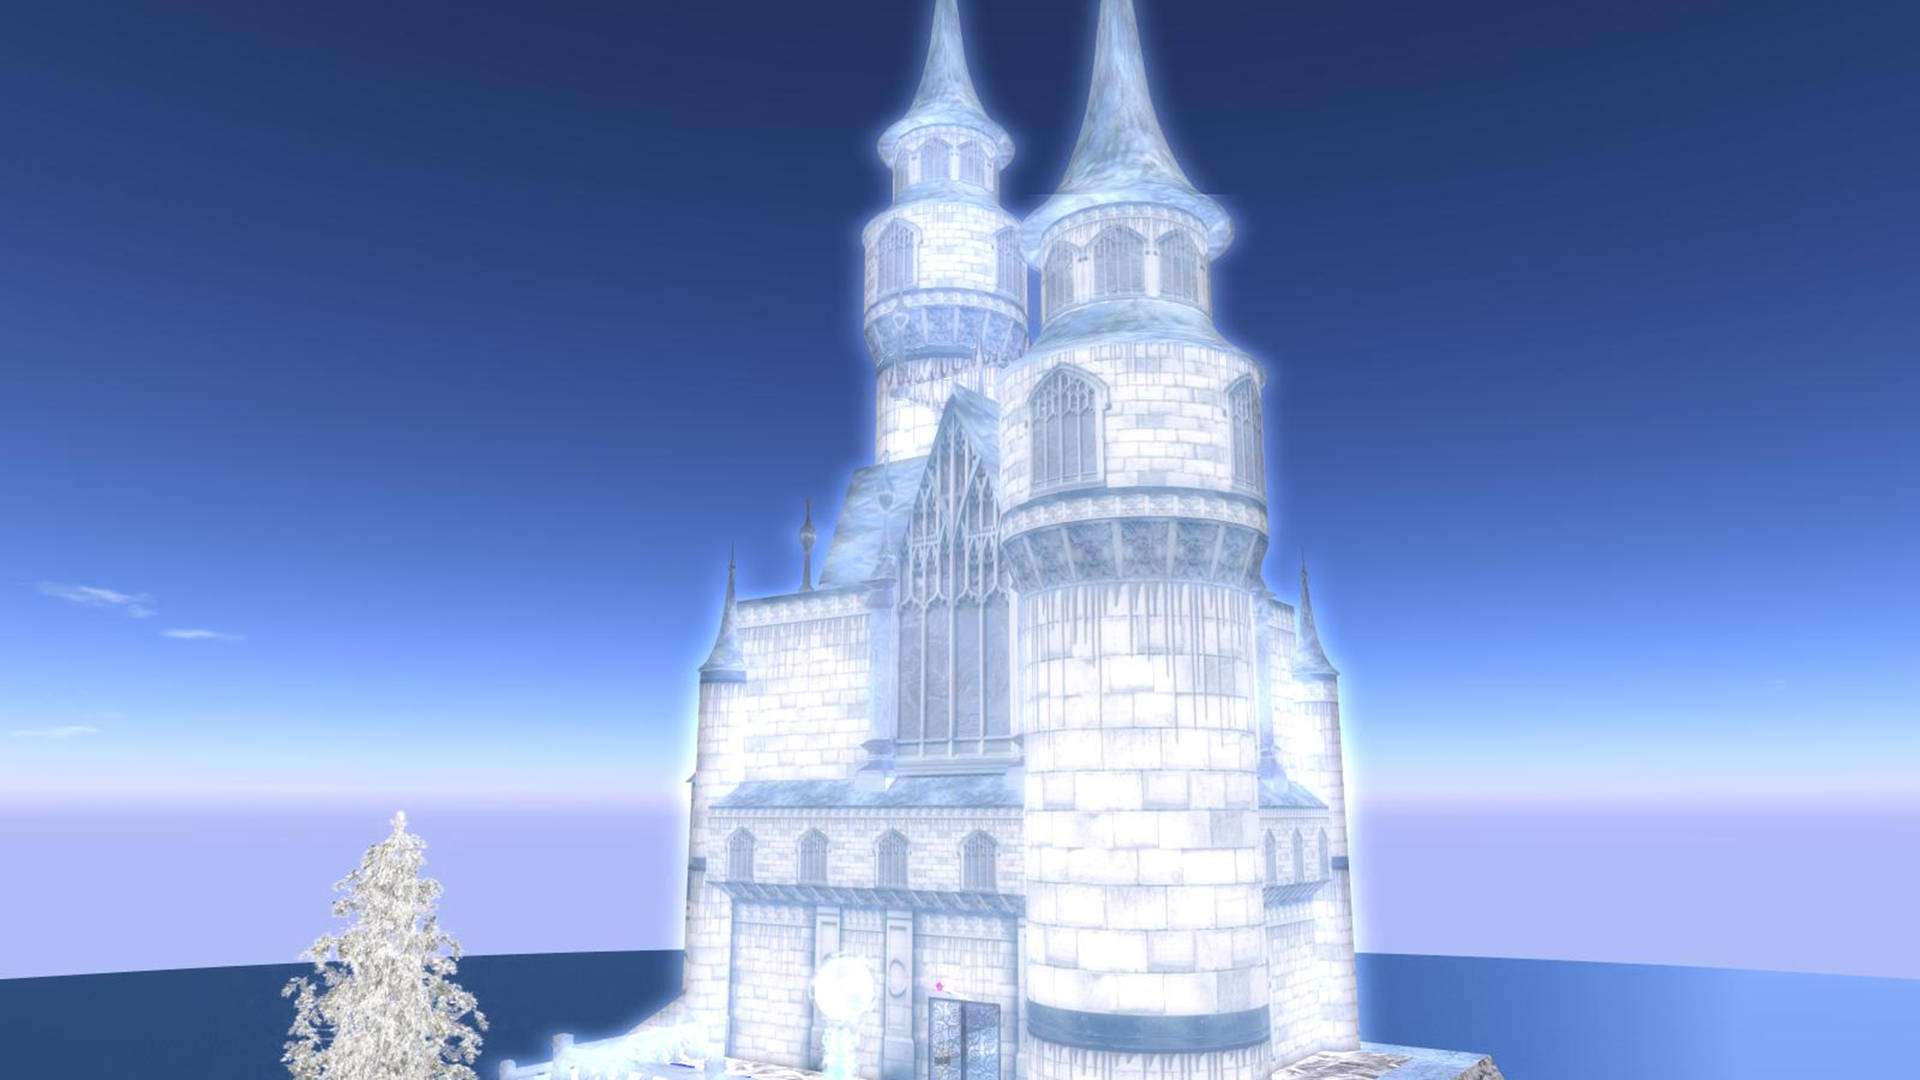 Glowing Frozen Castle